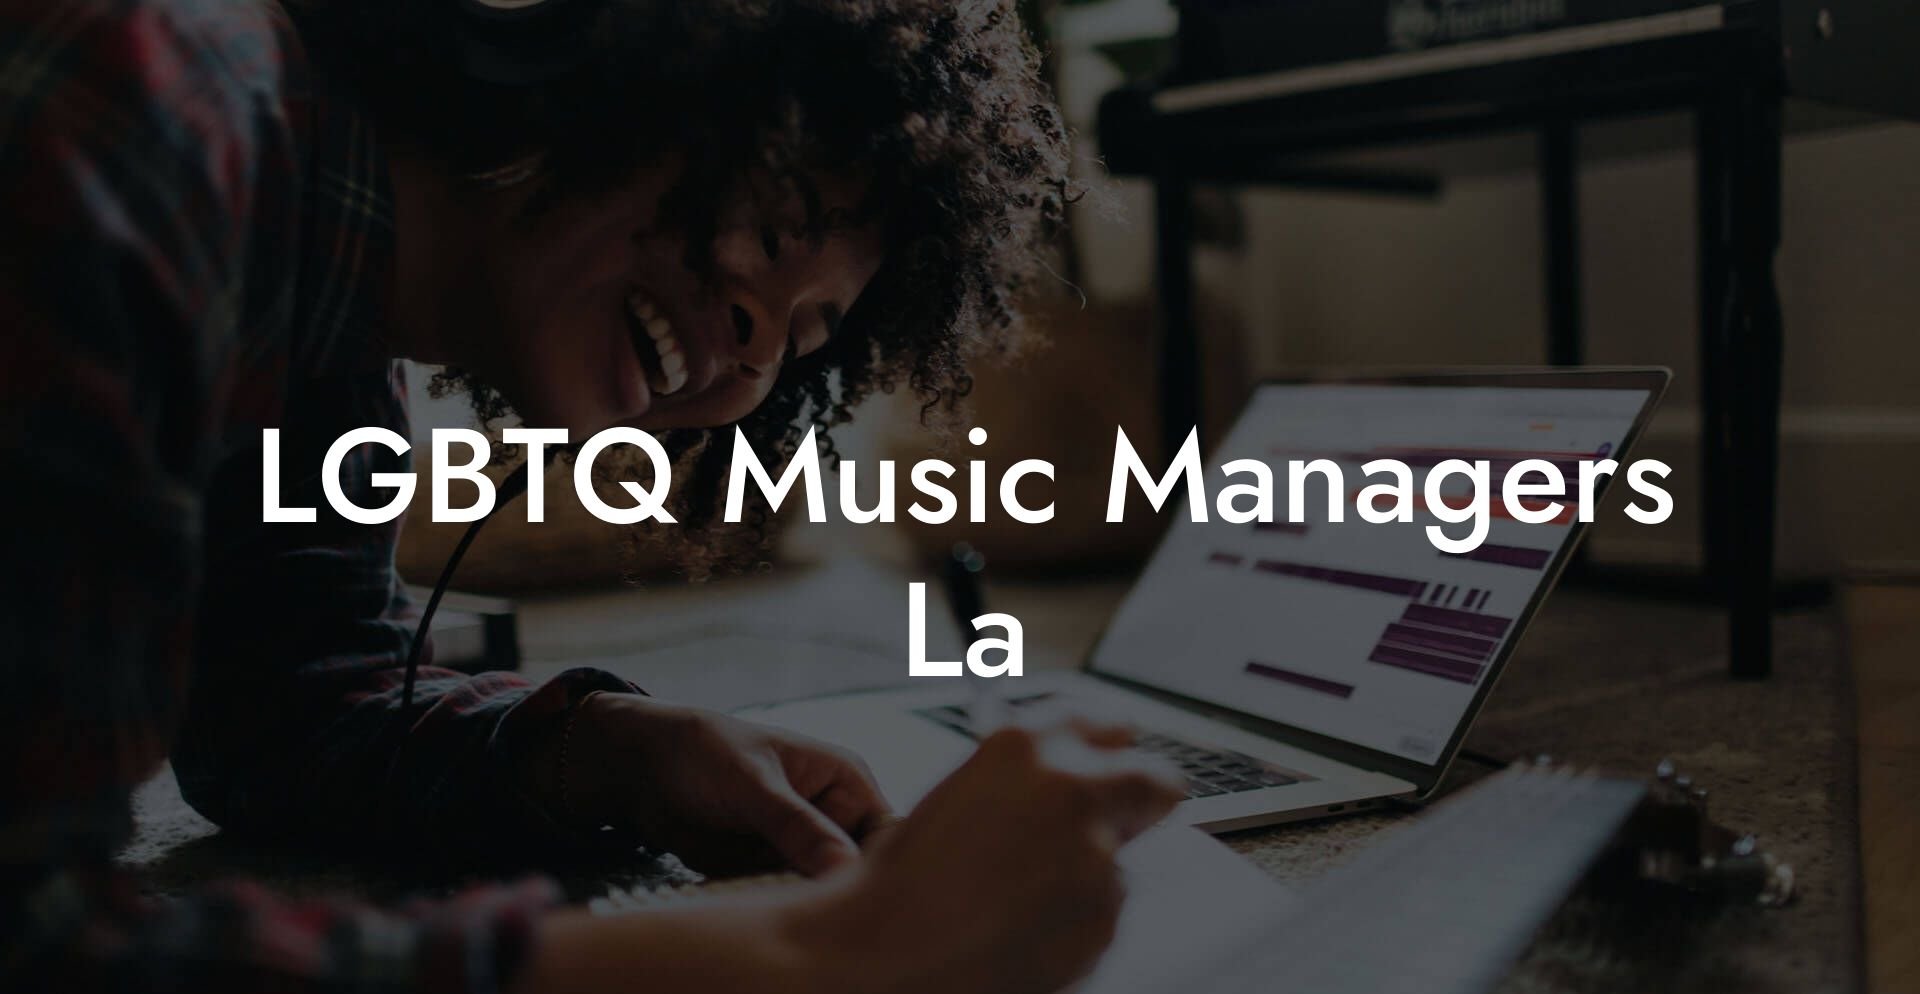 LGBTQ Music Managers La